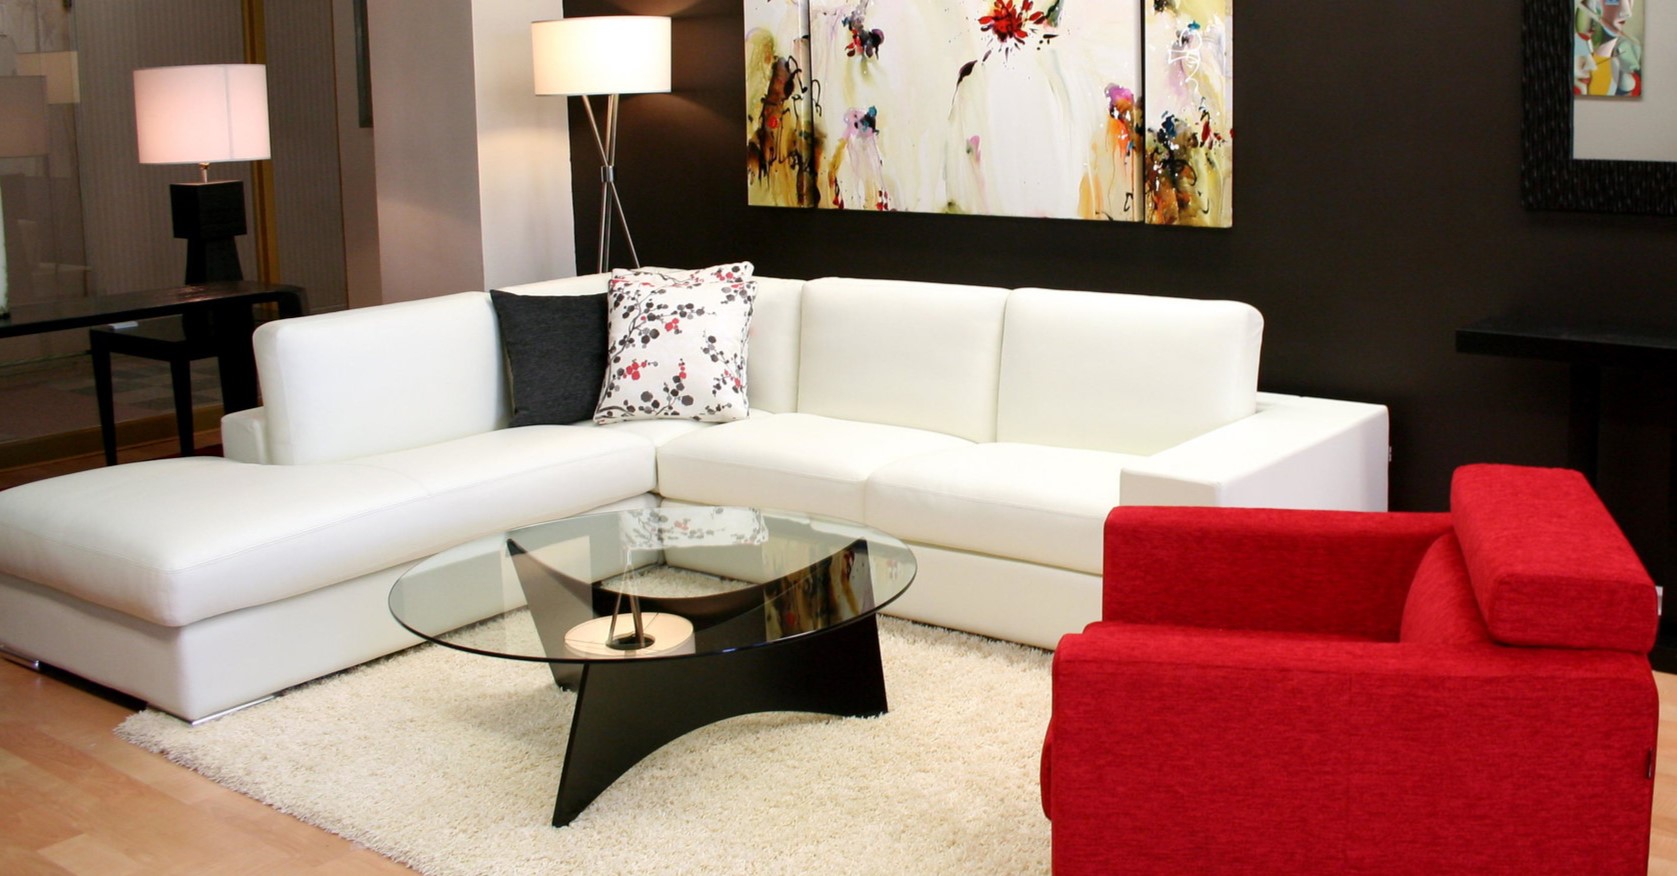 Белый диван стильно смотрится на фоне черной стены и отлично сочетается с красным креслом